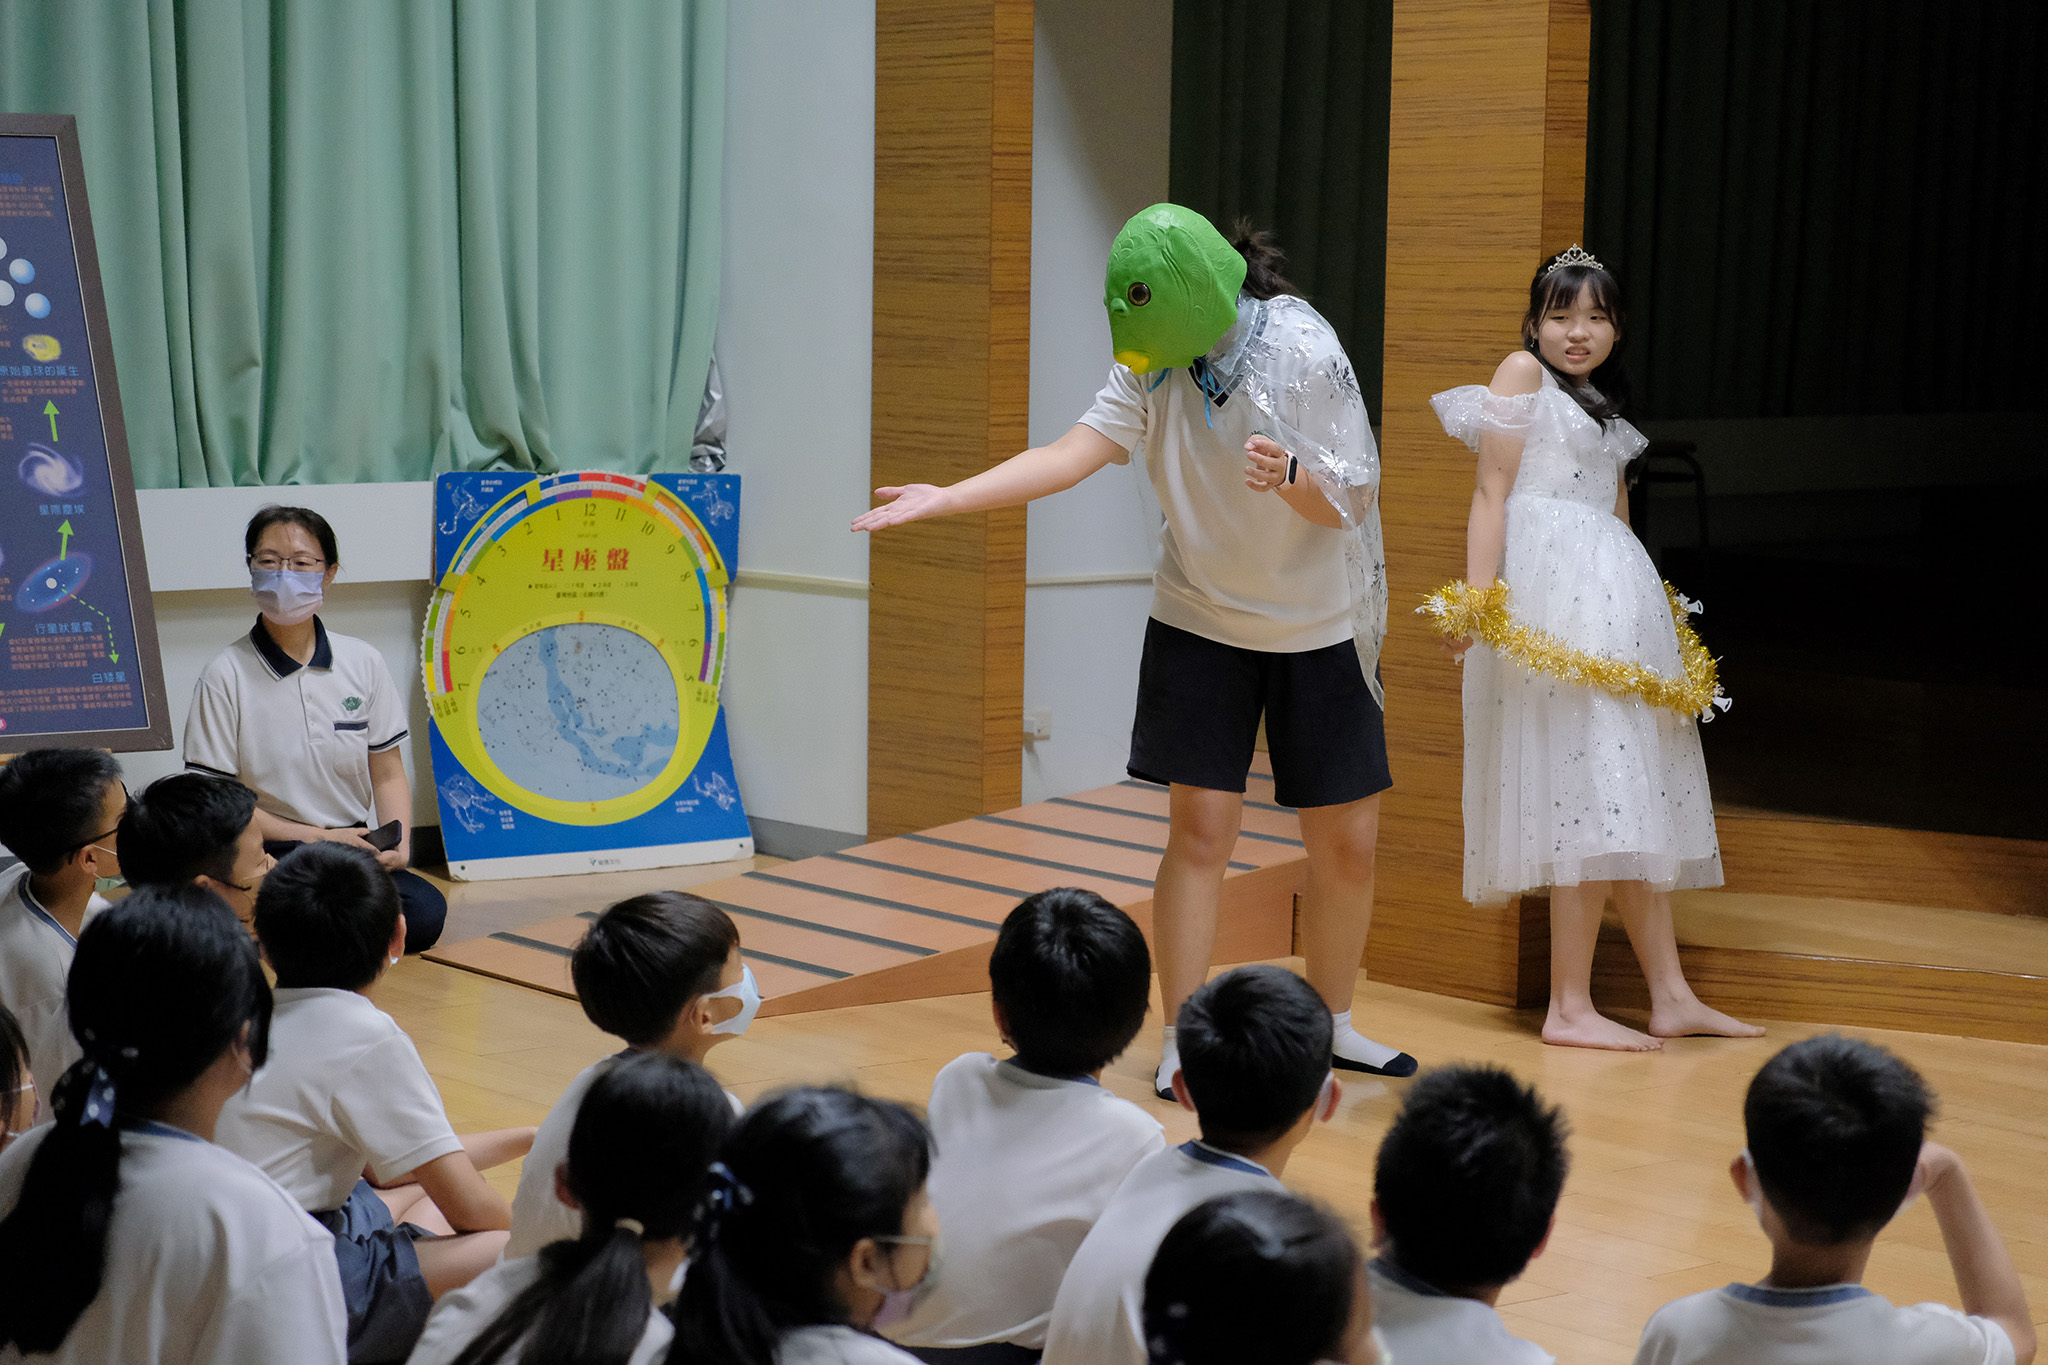 中學部學長姐利用生動活潑的戲劇表演，帶領大家認識秋天英仙座的傳說故事。